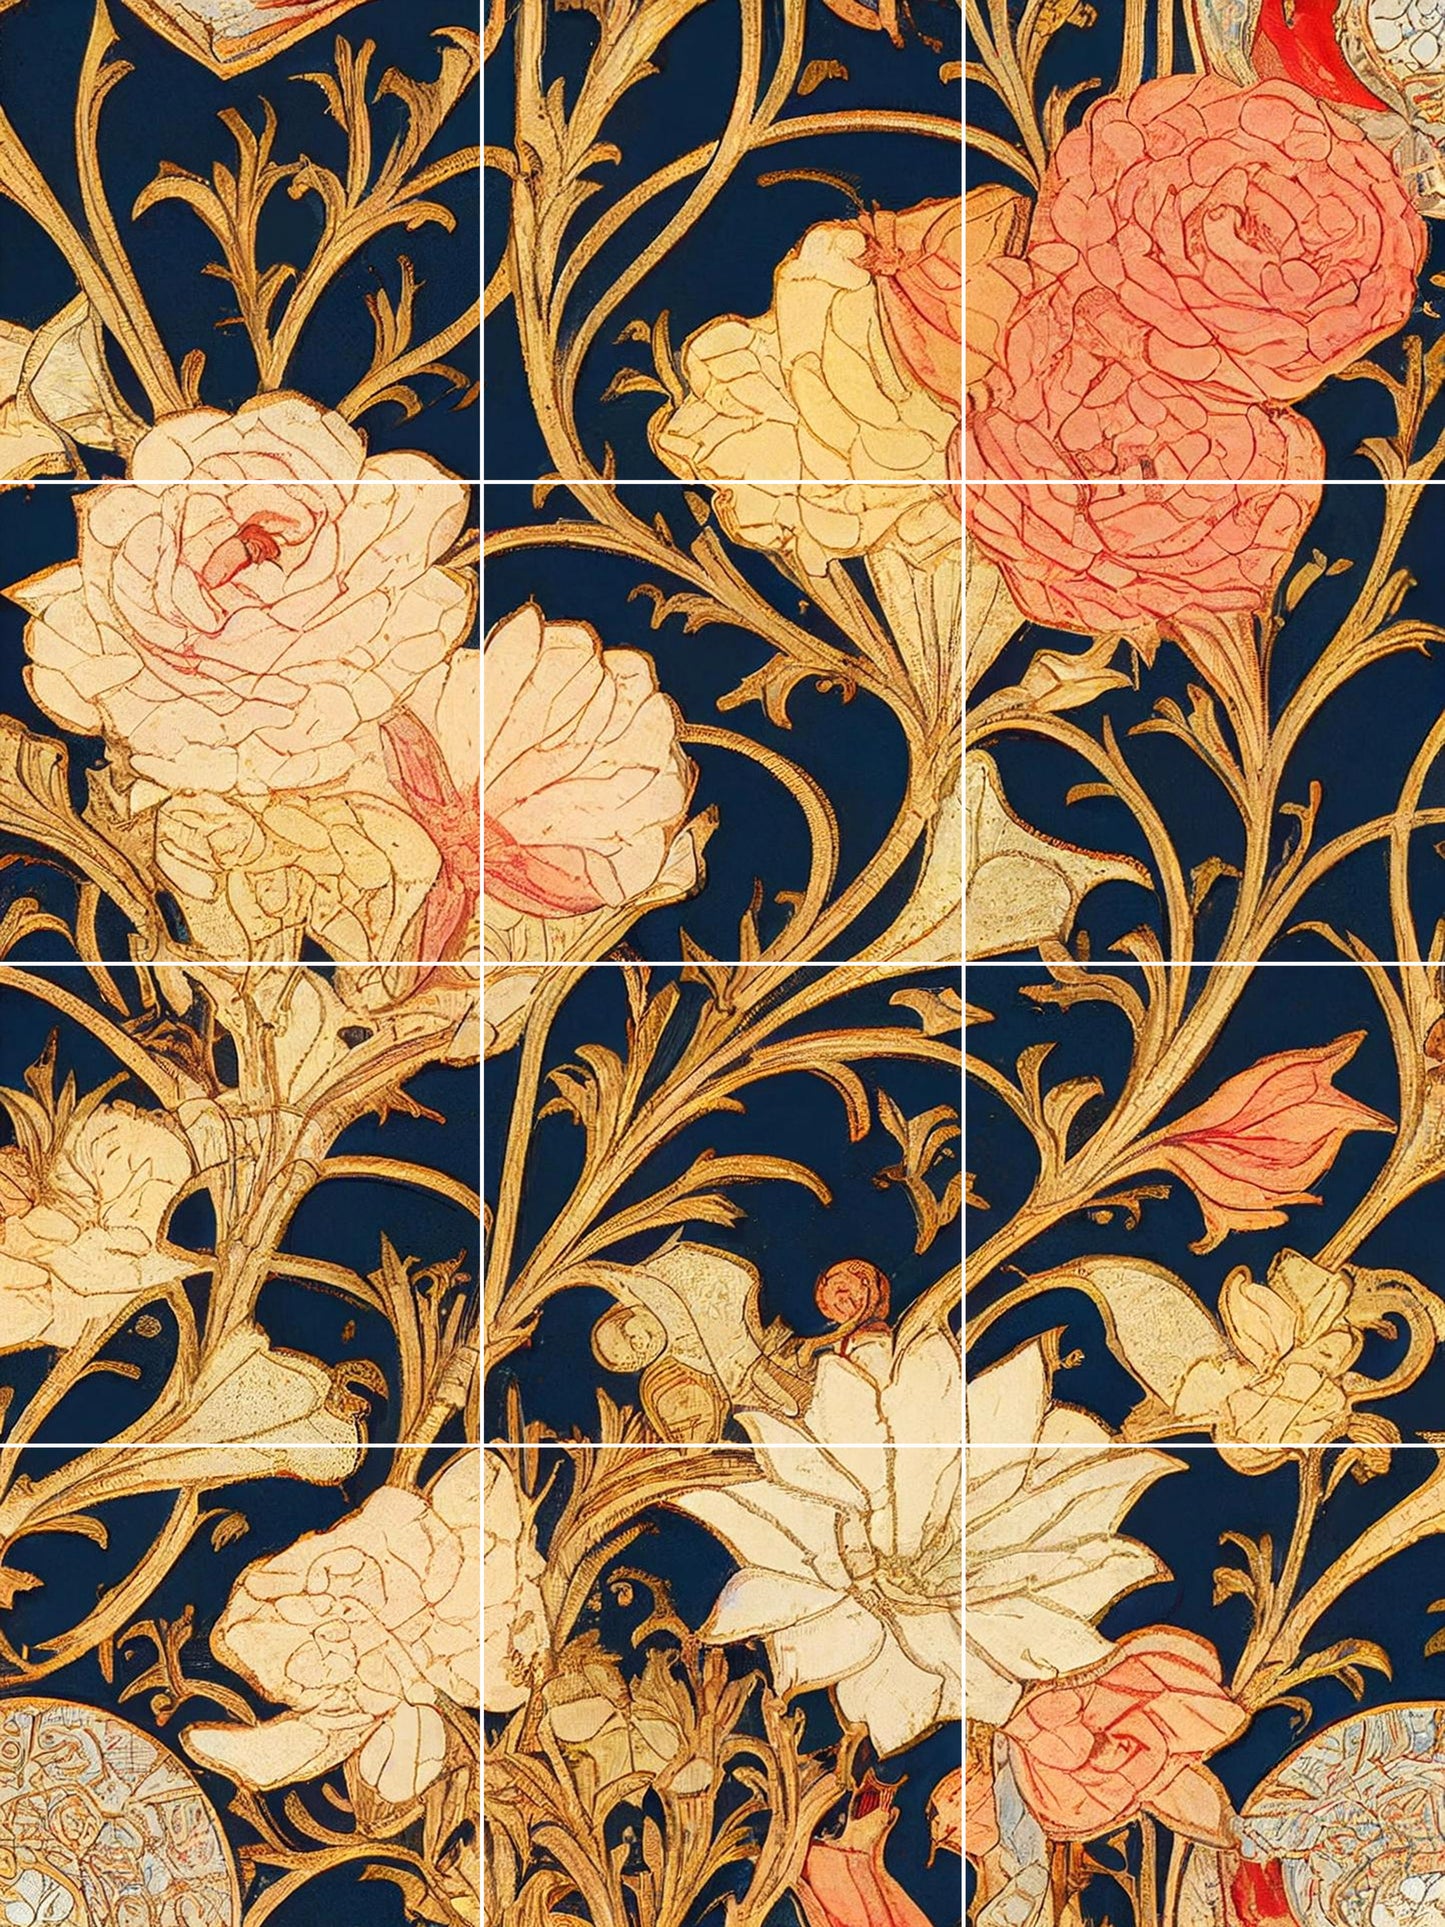 Art Nouveau Floral Ceramic Tile Mural/Mosaic -Art Nouveau Wall Decor Tiles -Kitchen Backsplash Tiles, Table Decorative Tiles, Bathroom Tiles